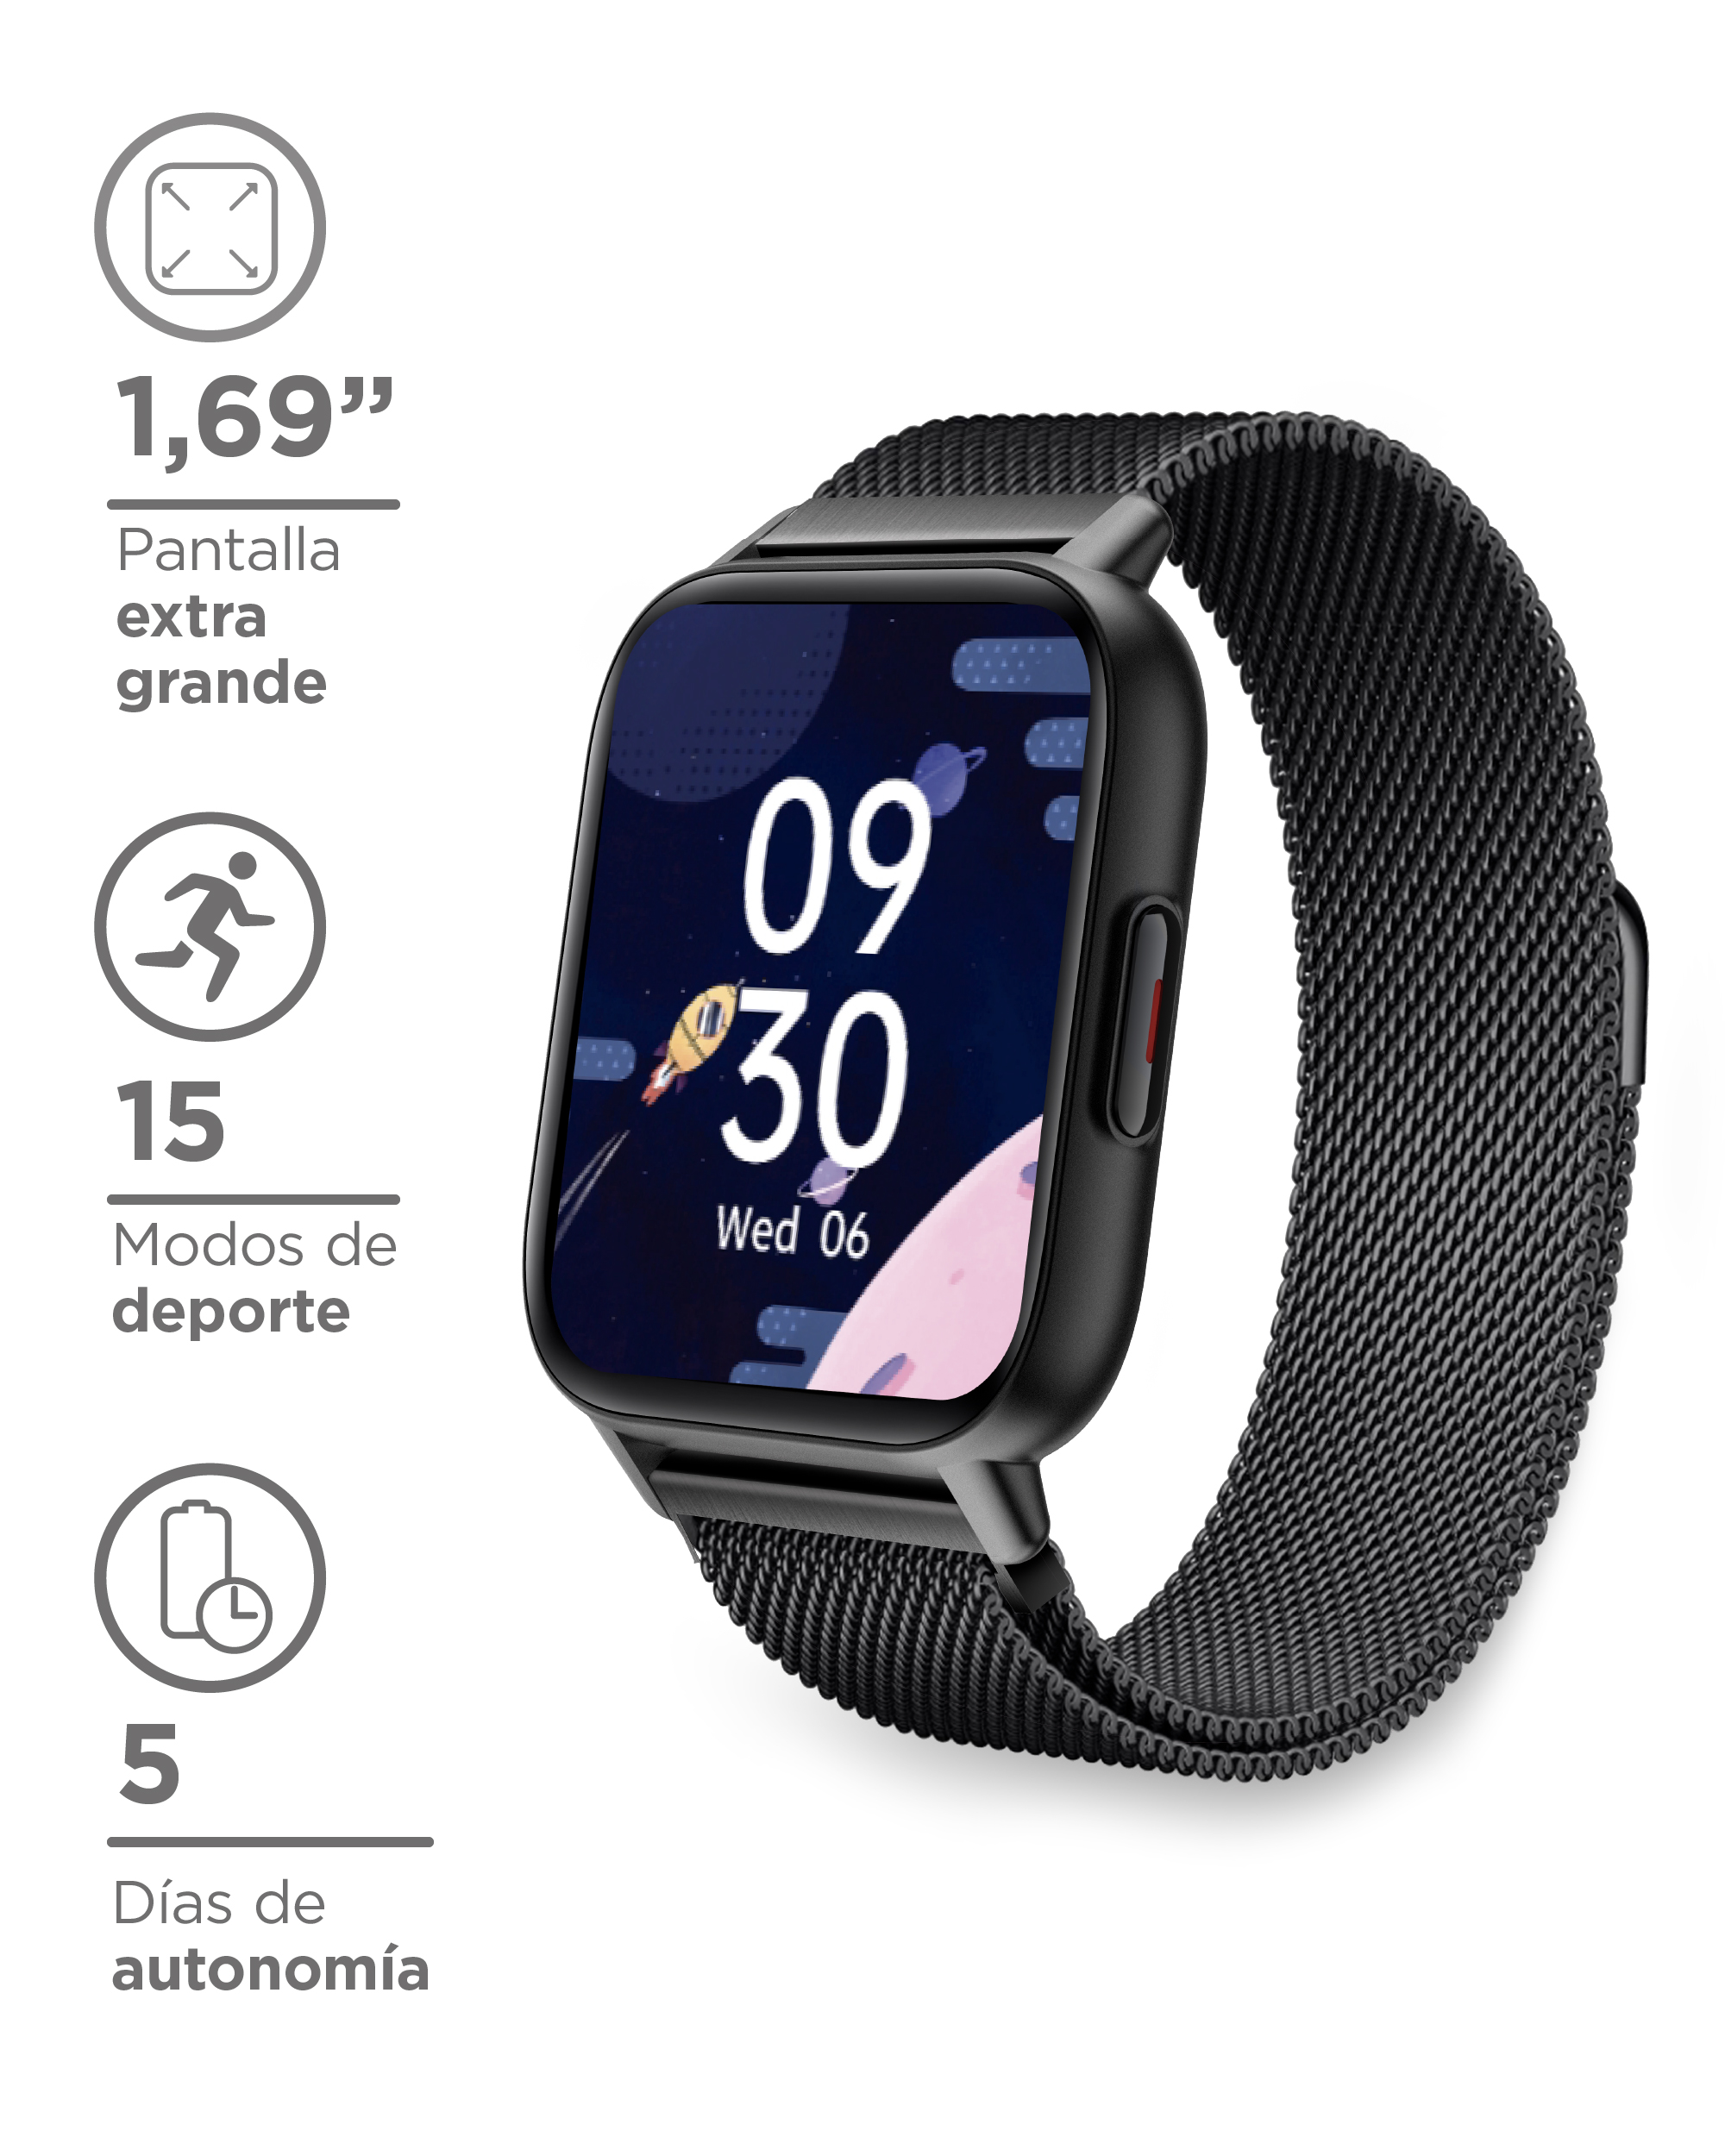 Smartwatch Ksix 2 Correas Incluidas Pantalla 1.69 Bluetooth 5.0 Autonomía 5 Días